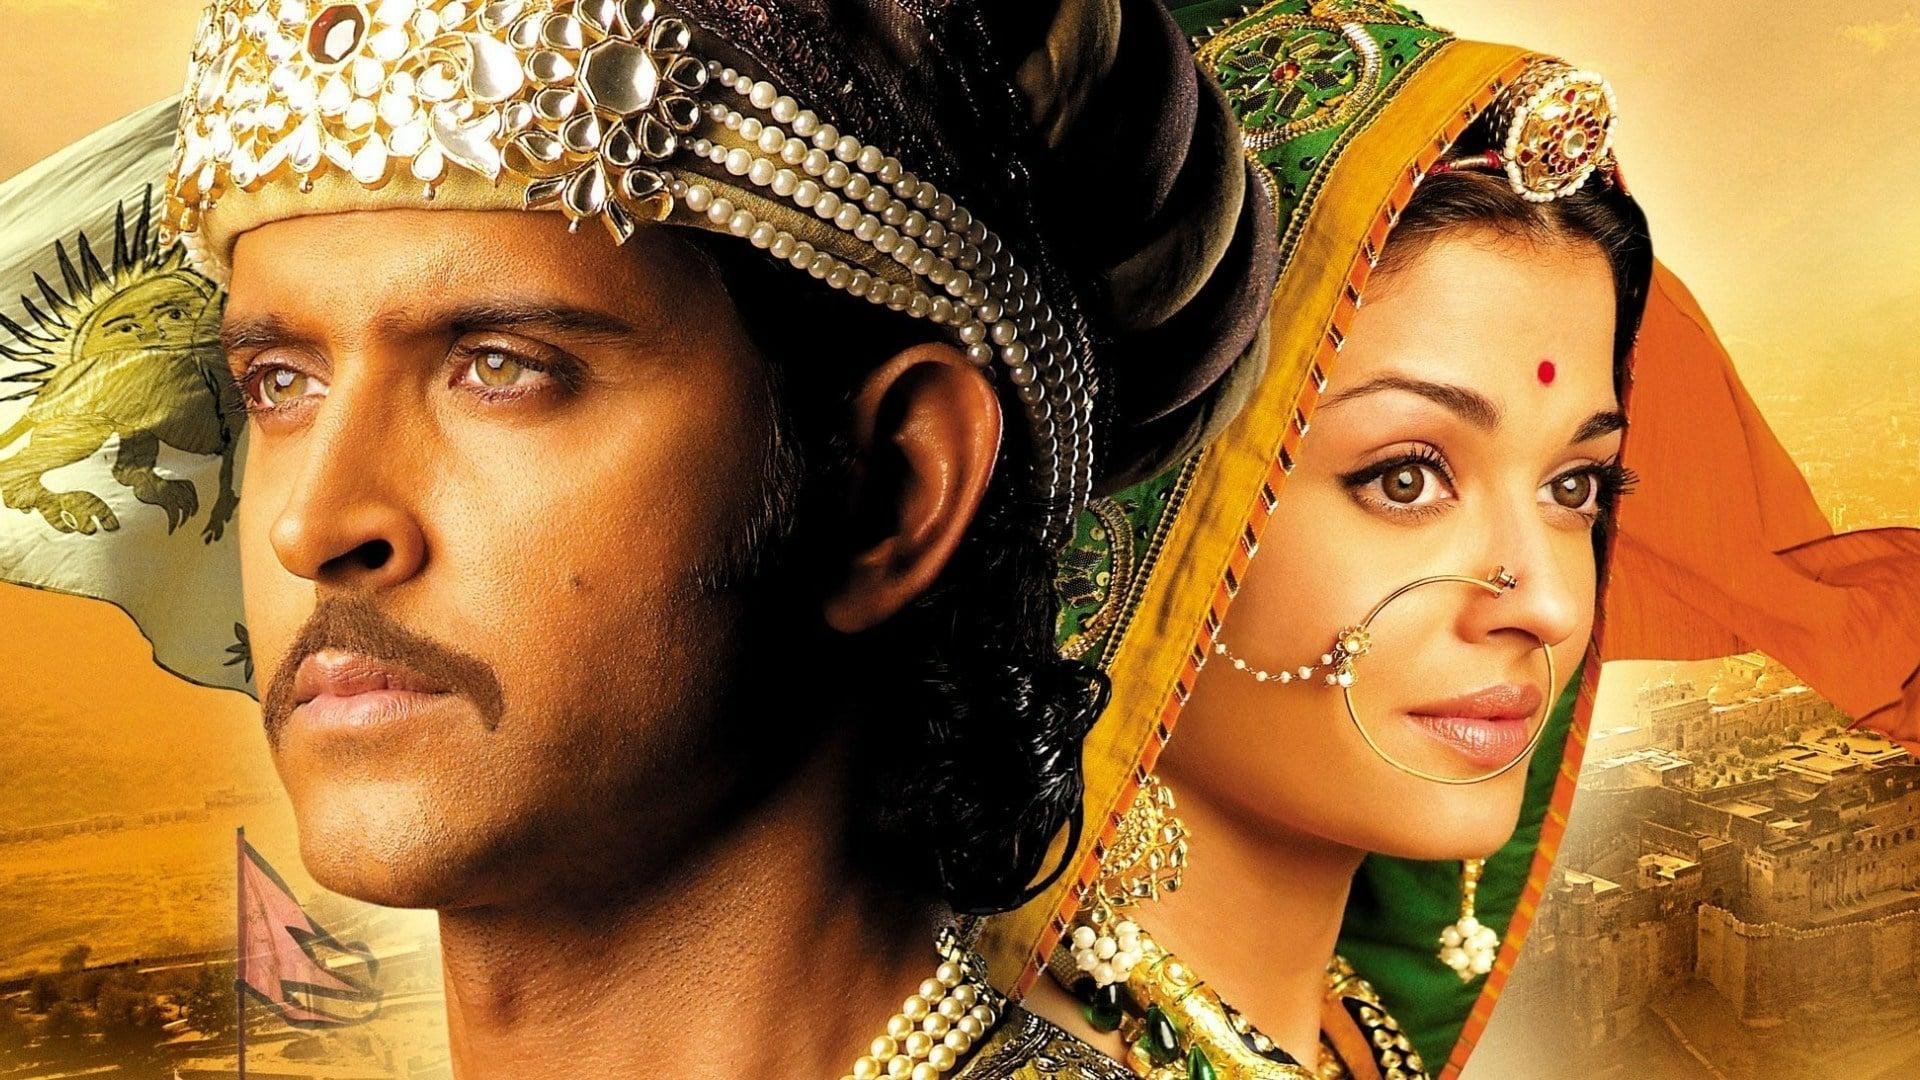 Jodha Akbar - జోధా అక్బర్ - Telugu Serial - Full Episode - 628 - Epic Story  - Zee Telugu - YouTube